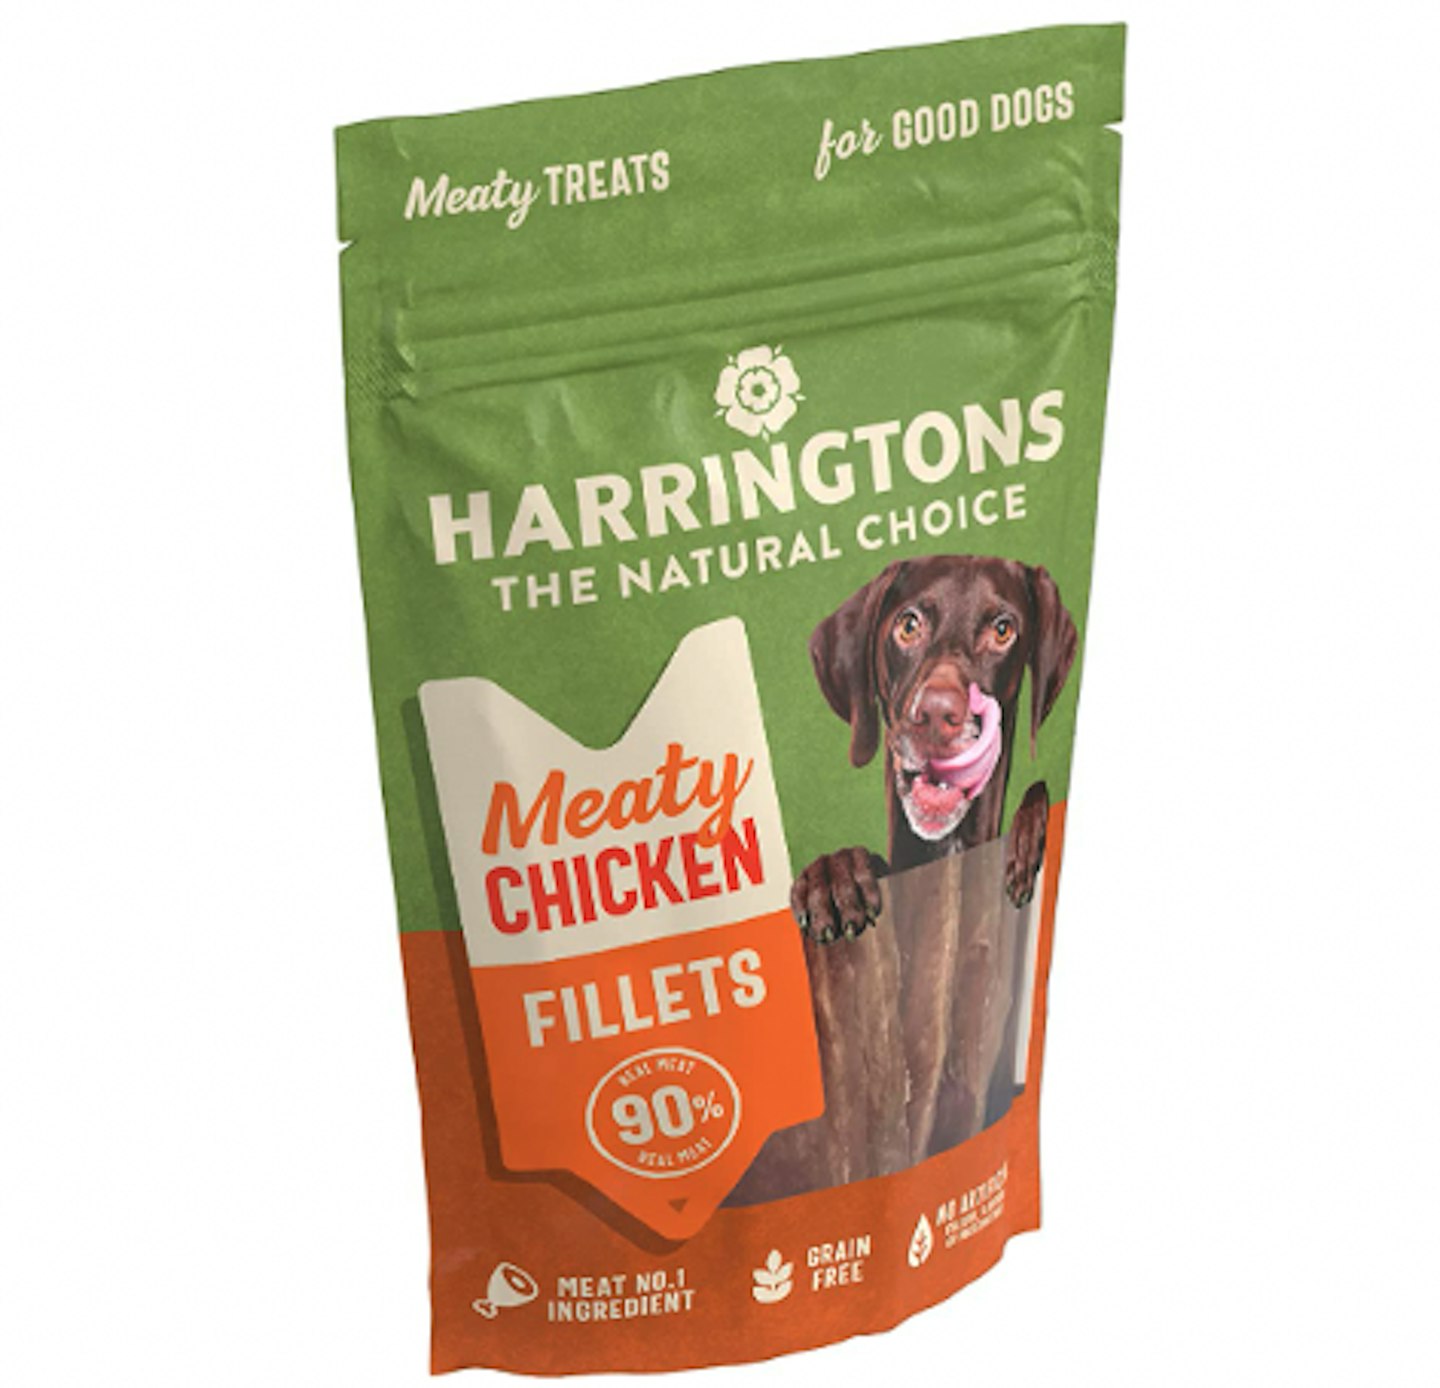 Harrington’s Meaty Treats